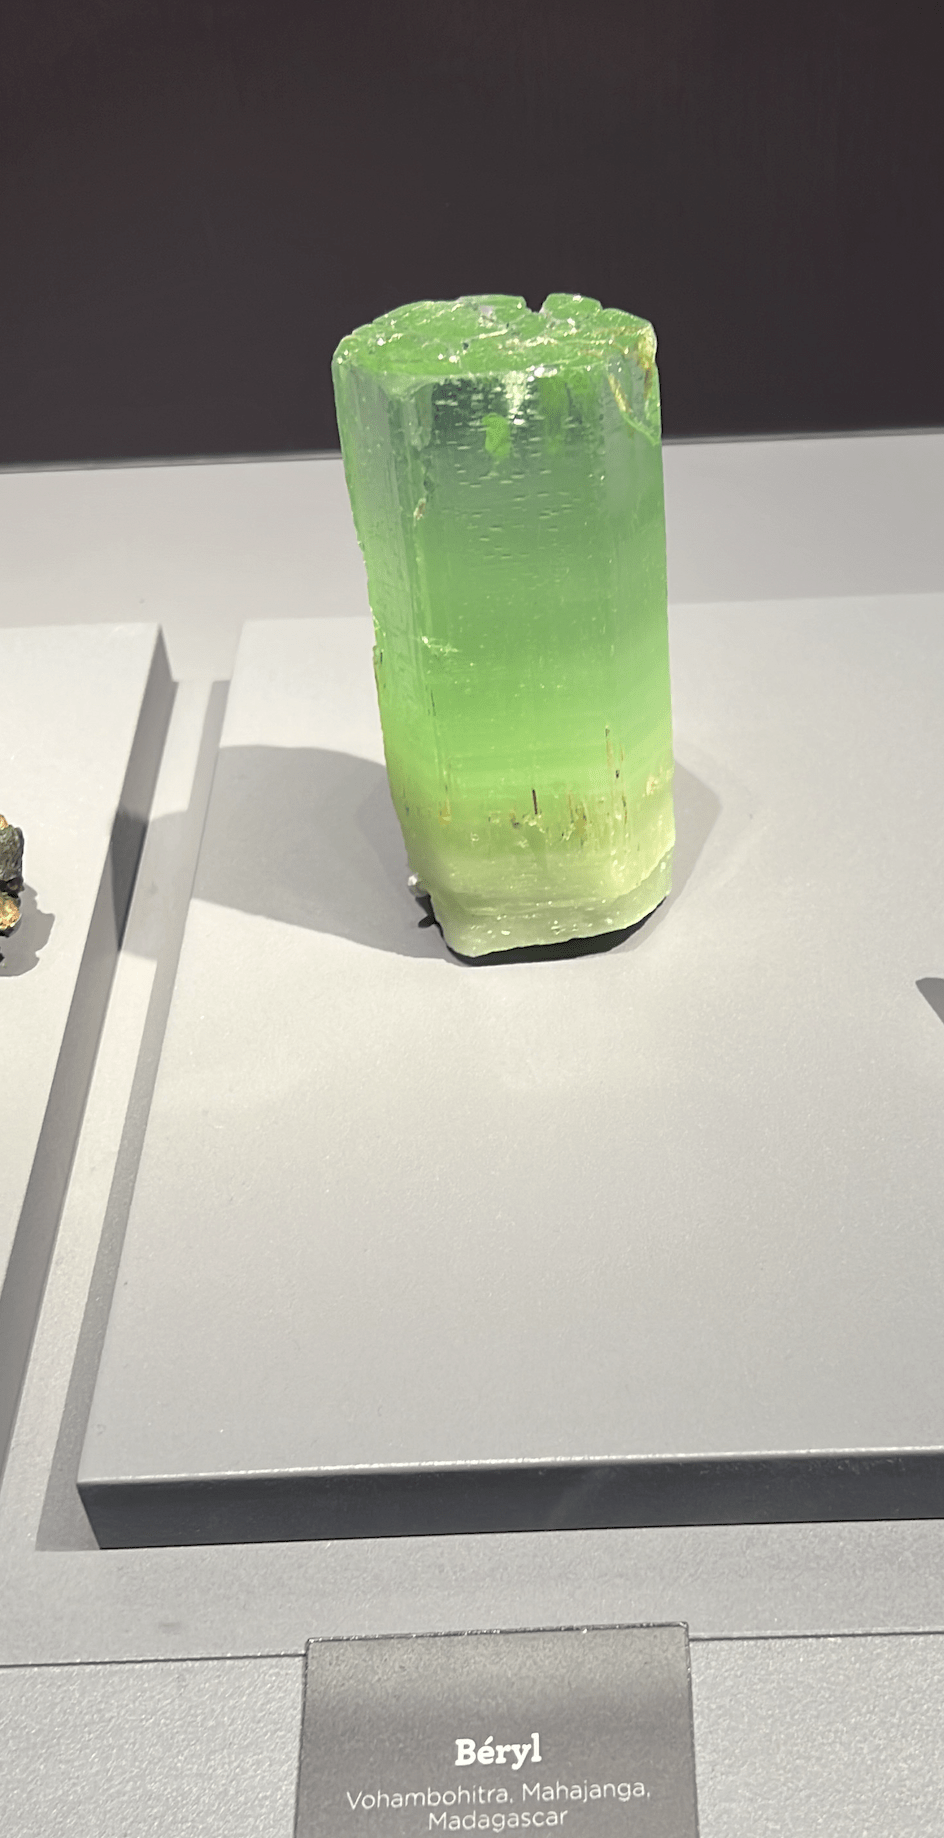 Groen beryl edelsteen prive foto musee de Mineralogie Parijs